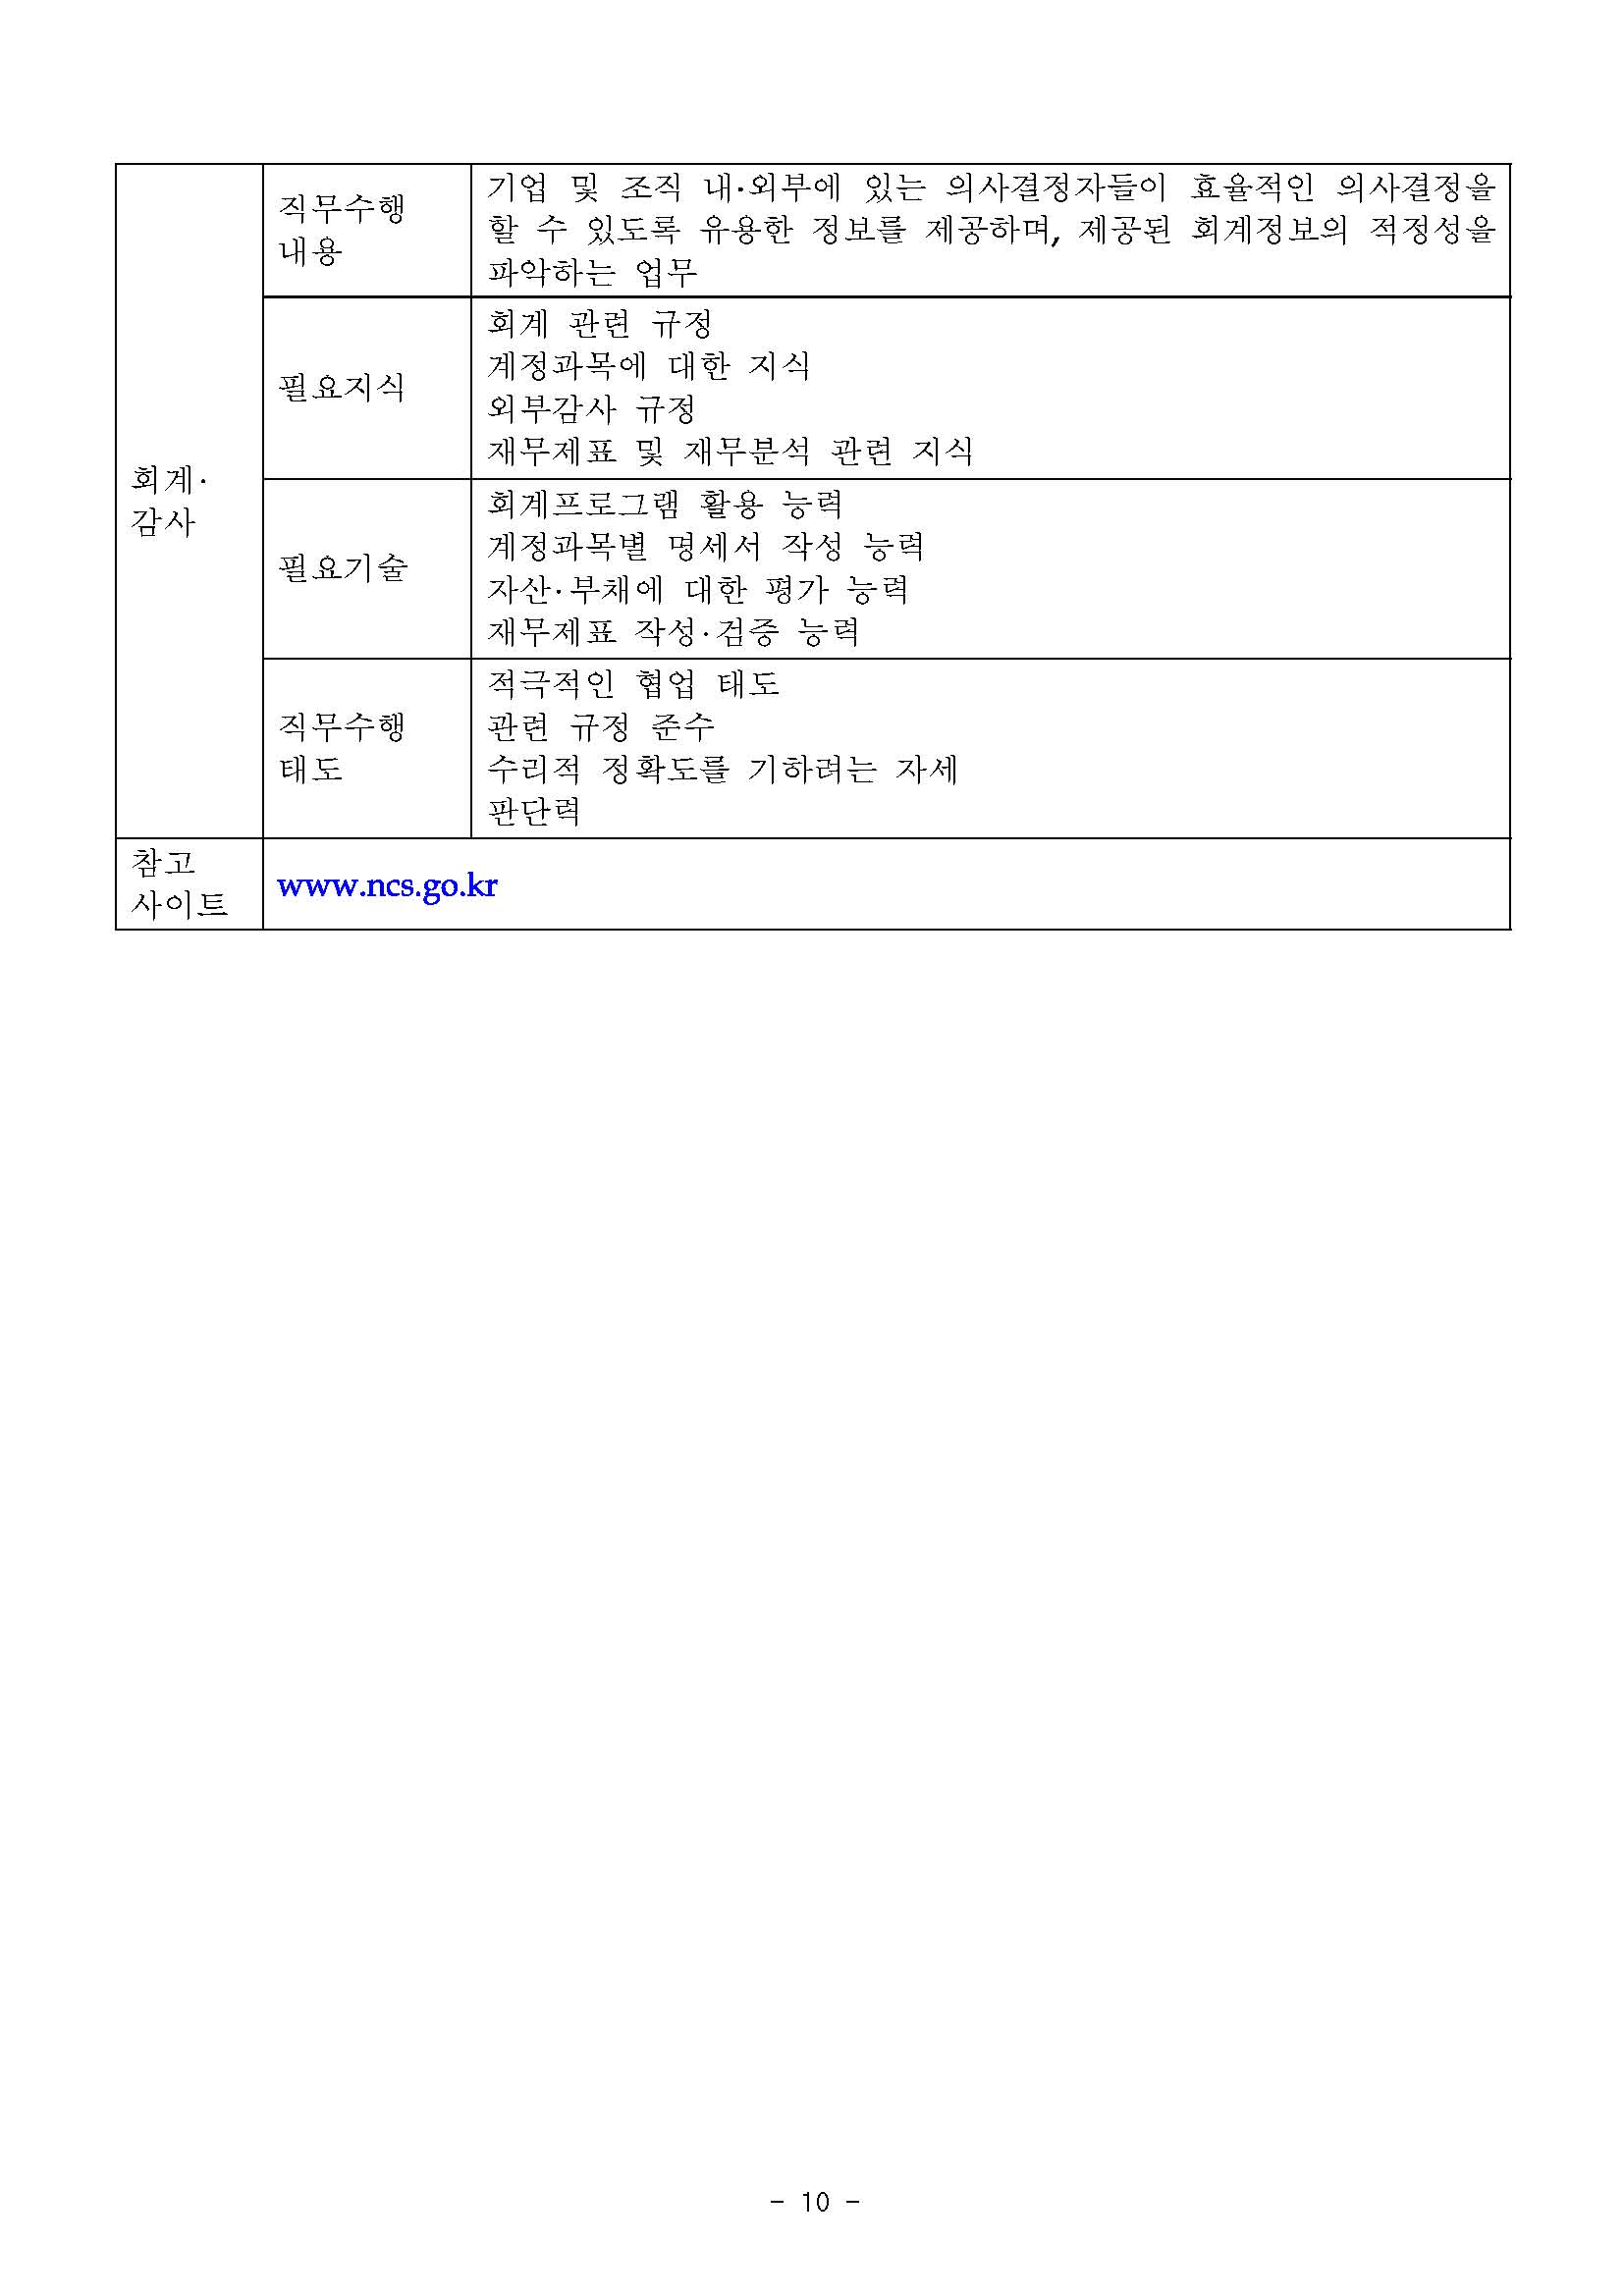 2017_하반기_신입사원 채용공고(최종)_페이지_10.jpg